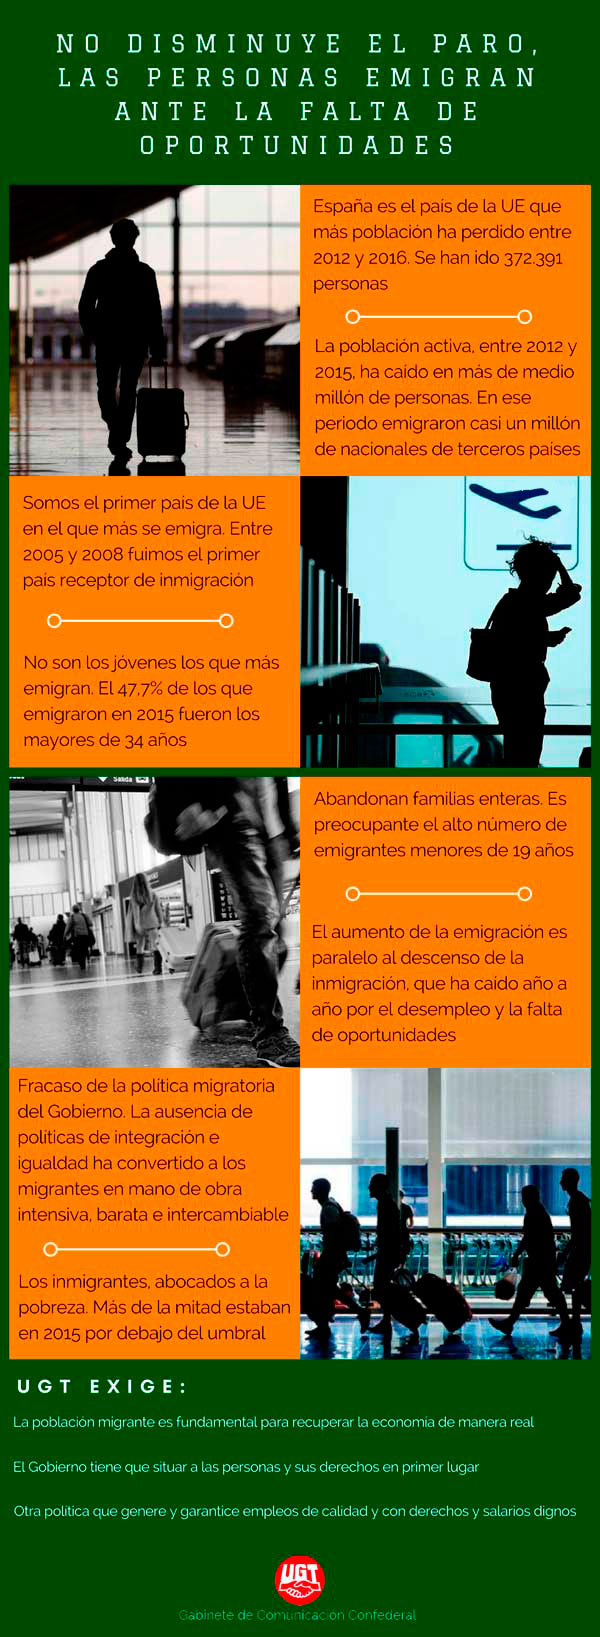 InfografiaCuarta_Migraciones_UGT_Negro600.jpg